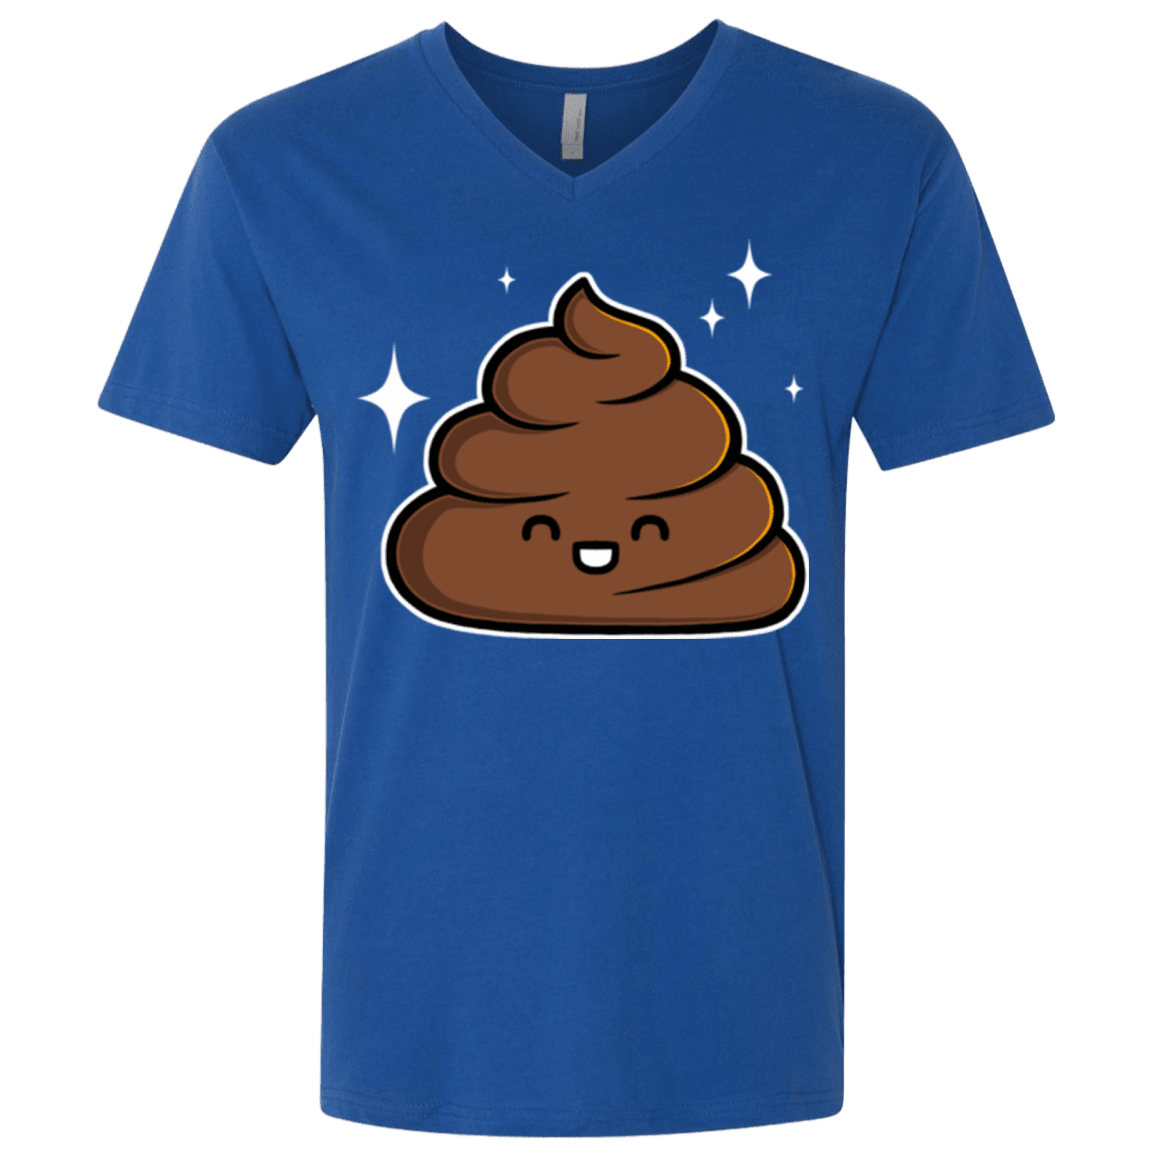 T-Shirts Royal / X-Small Cutie Poop Men's Premium V-Neck